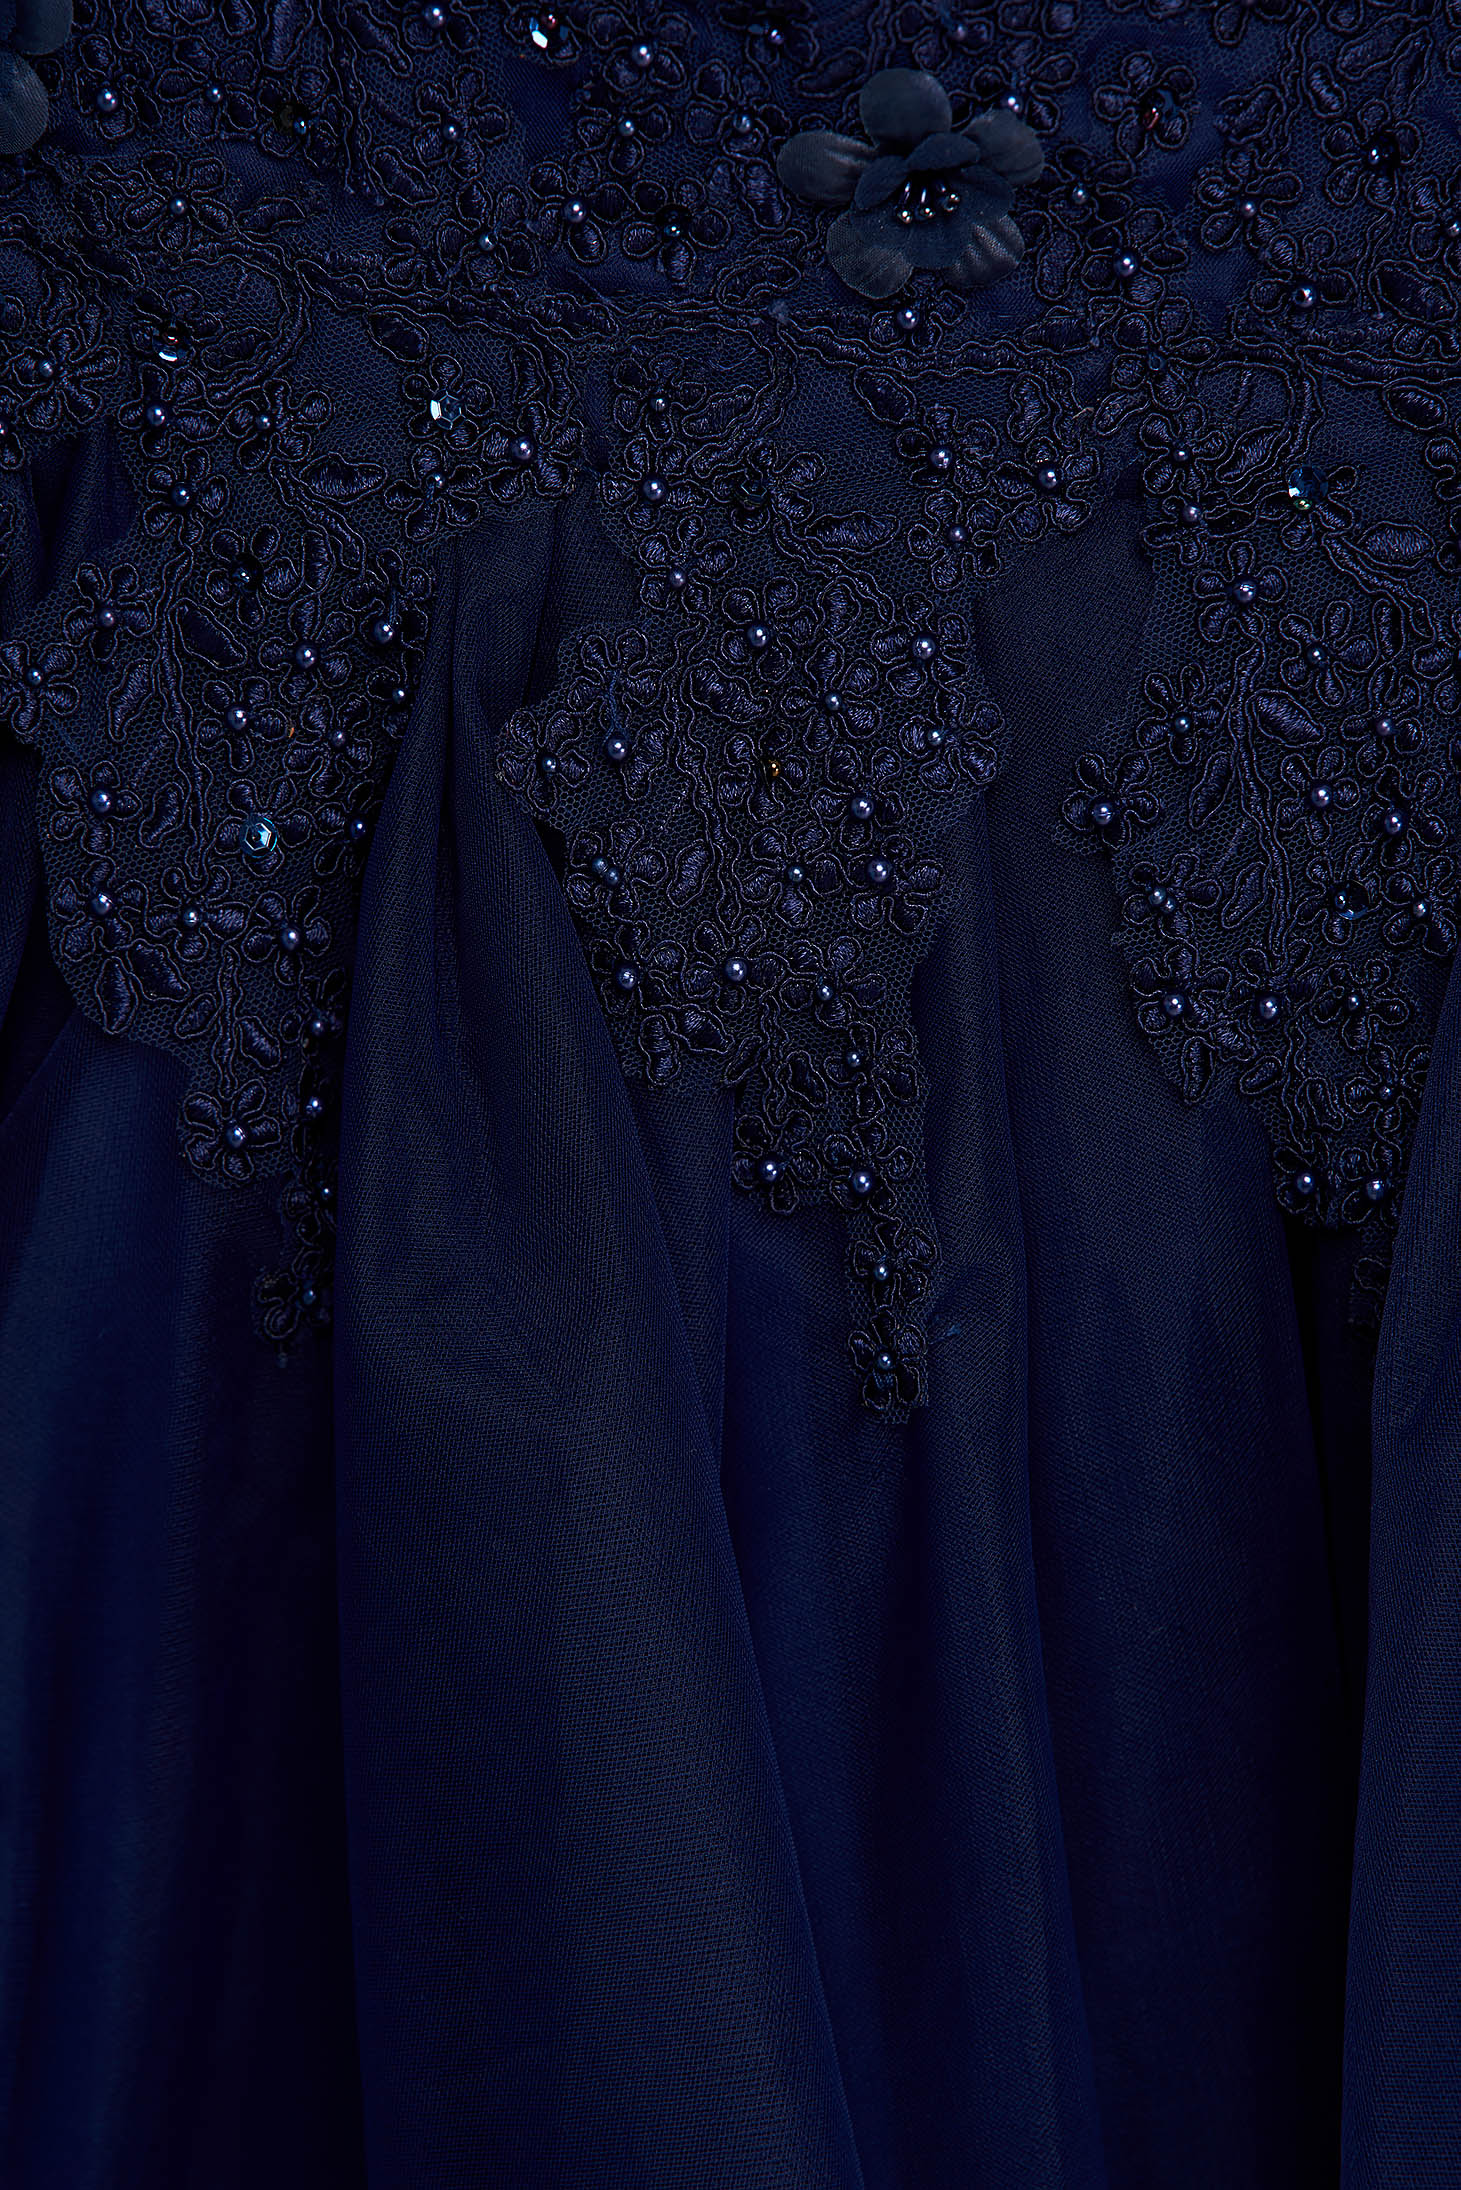 Rochie albastru-inchis scurta de ocazie in clos din tul cu broderie si aplicatii cu perle 4 - StarShinerS.ro